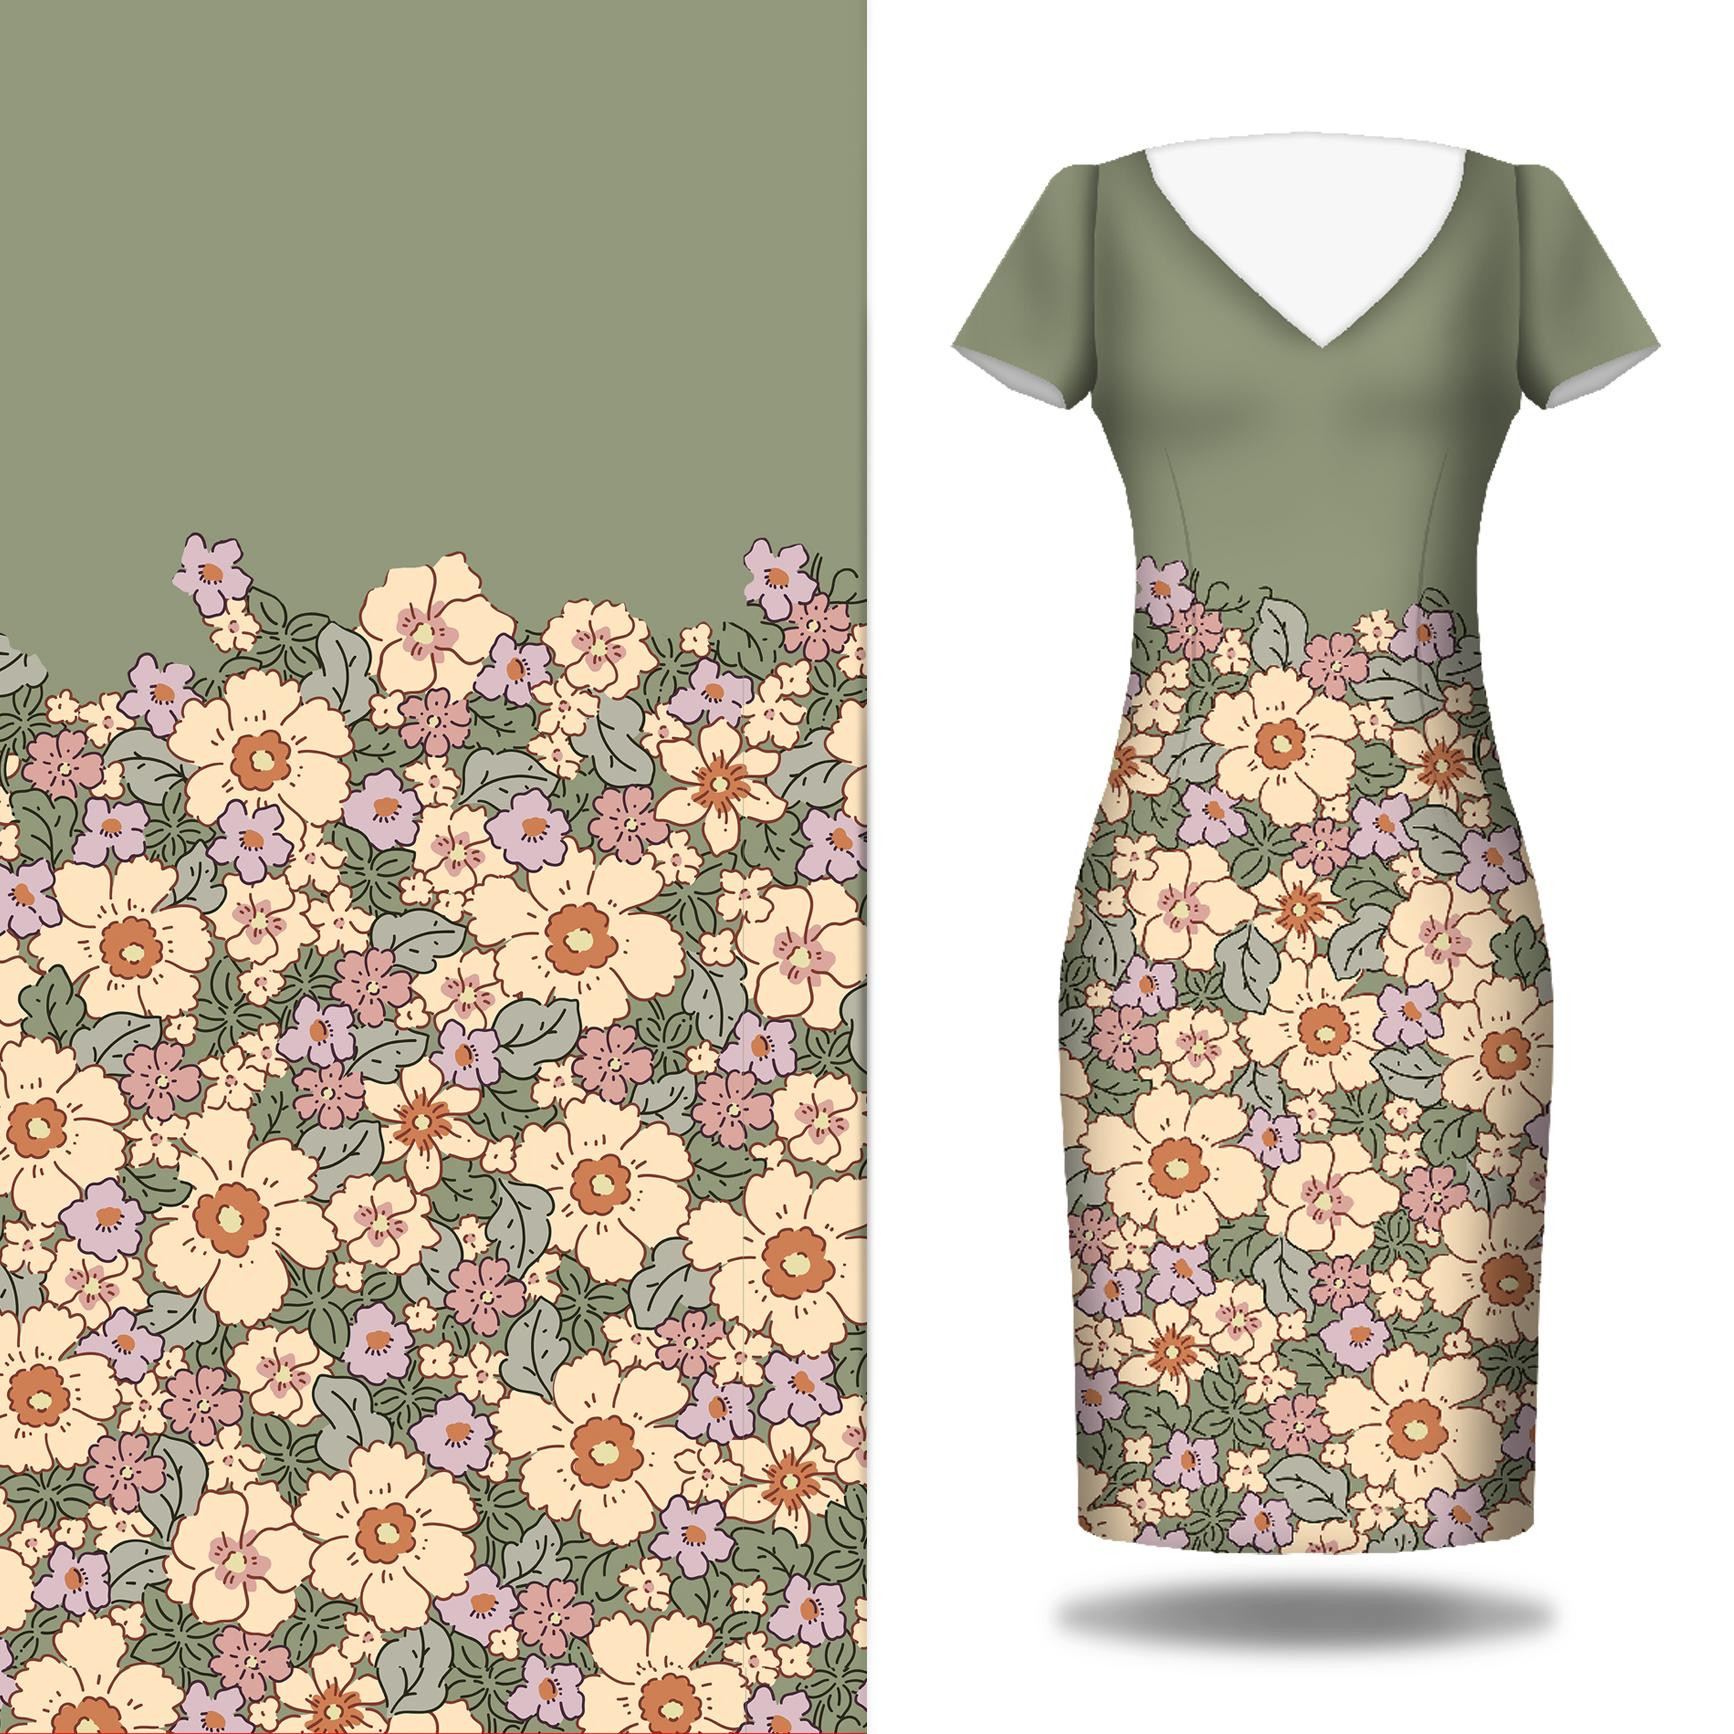 PASTEL FLOWERS PAT 2 - dress panel Linen 100%